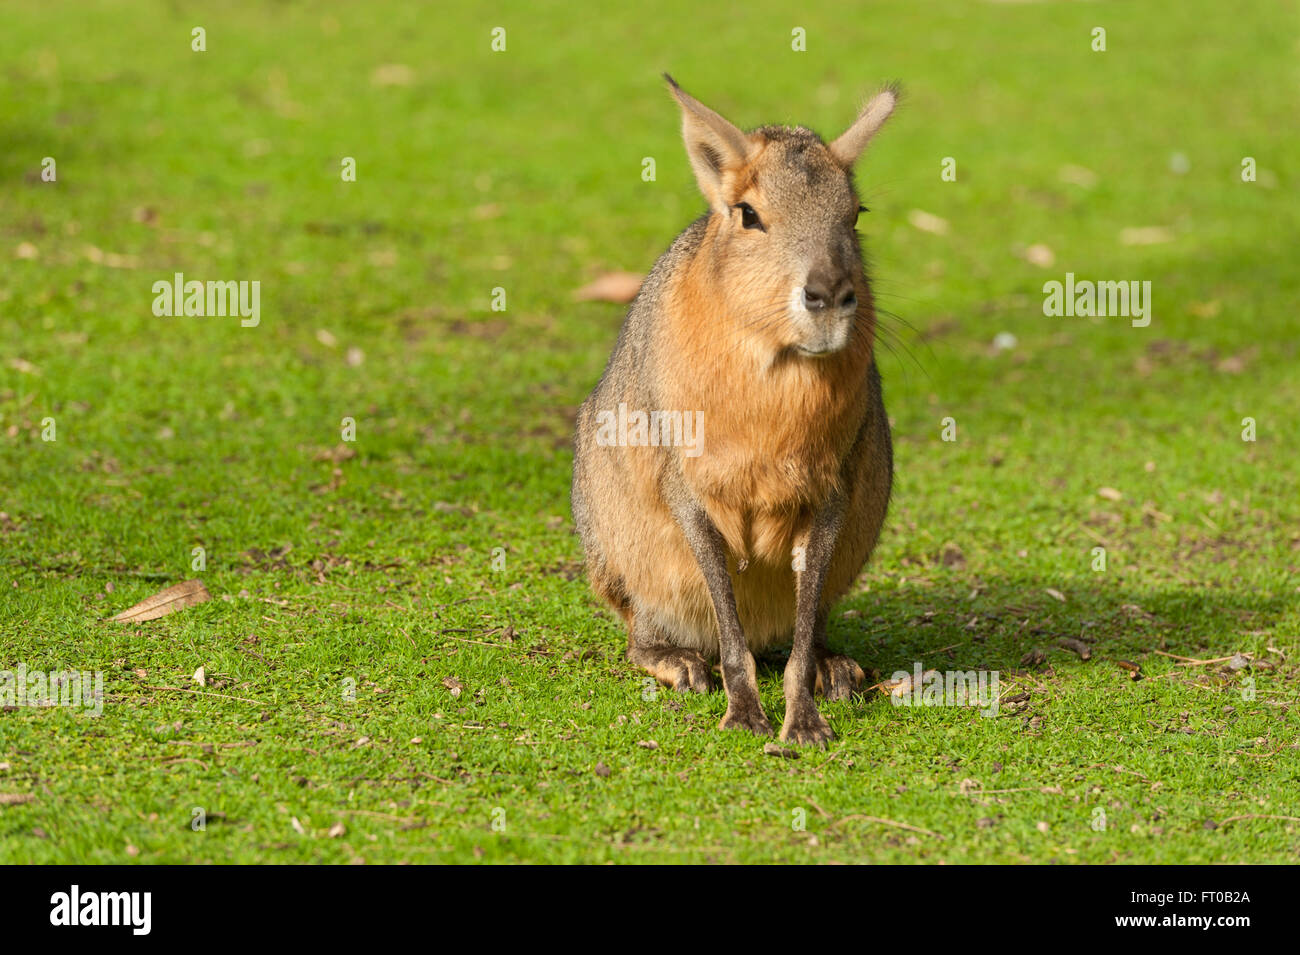 Posing capybara, Buenos Aires Stock Photo